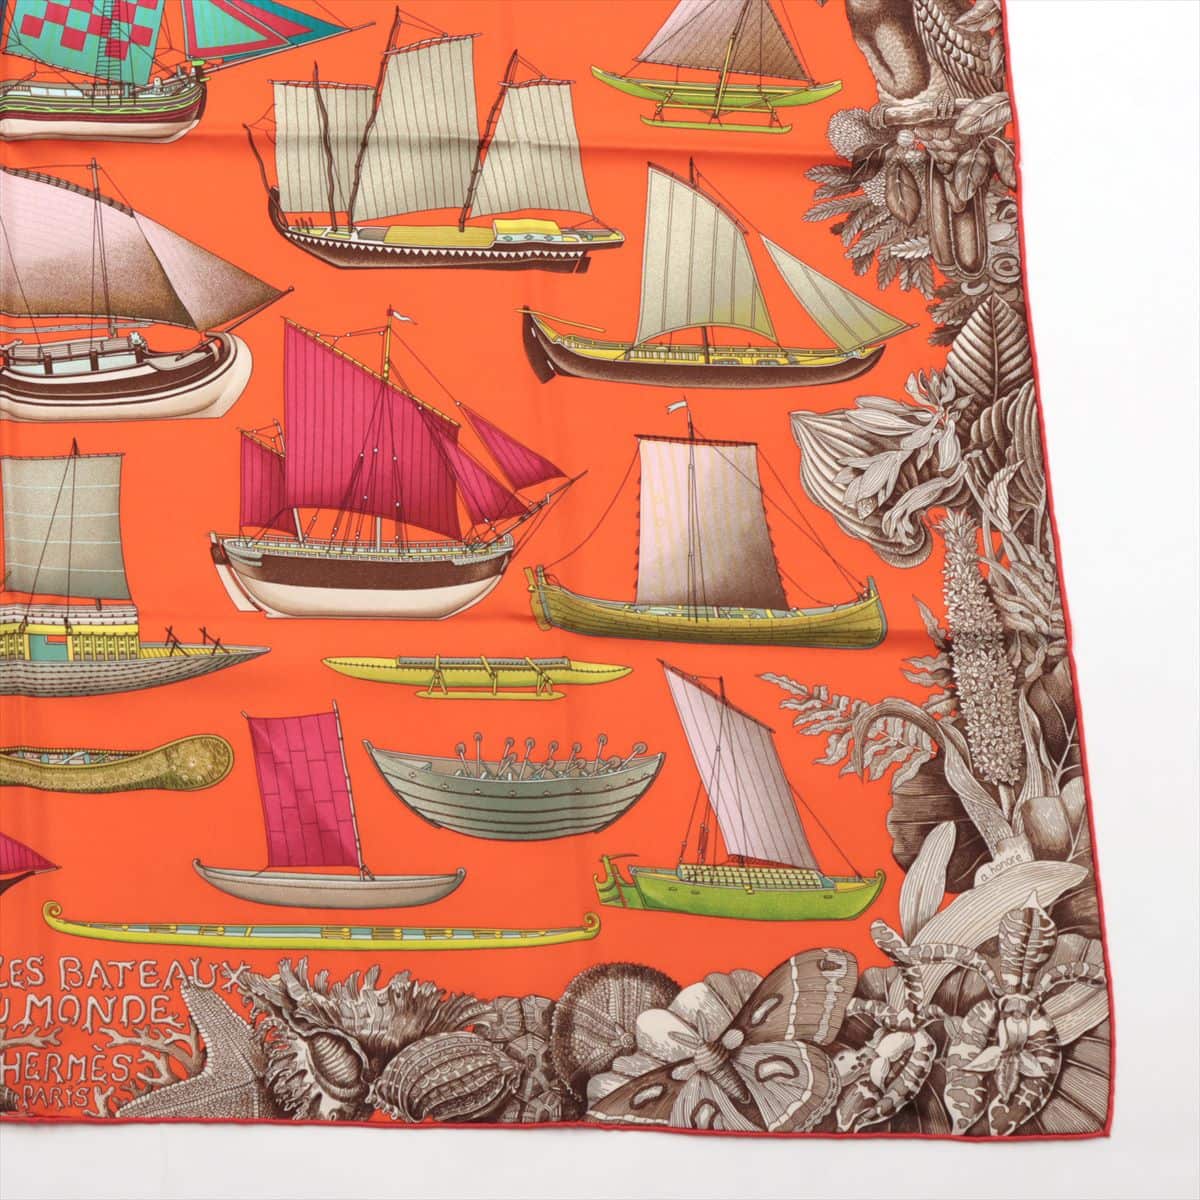 エルメス スカーフ シルク オレンジ カレ90 Tous Les Bateaux du Monde 世界の帆船